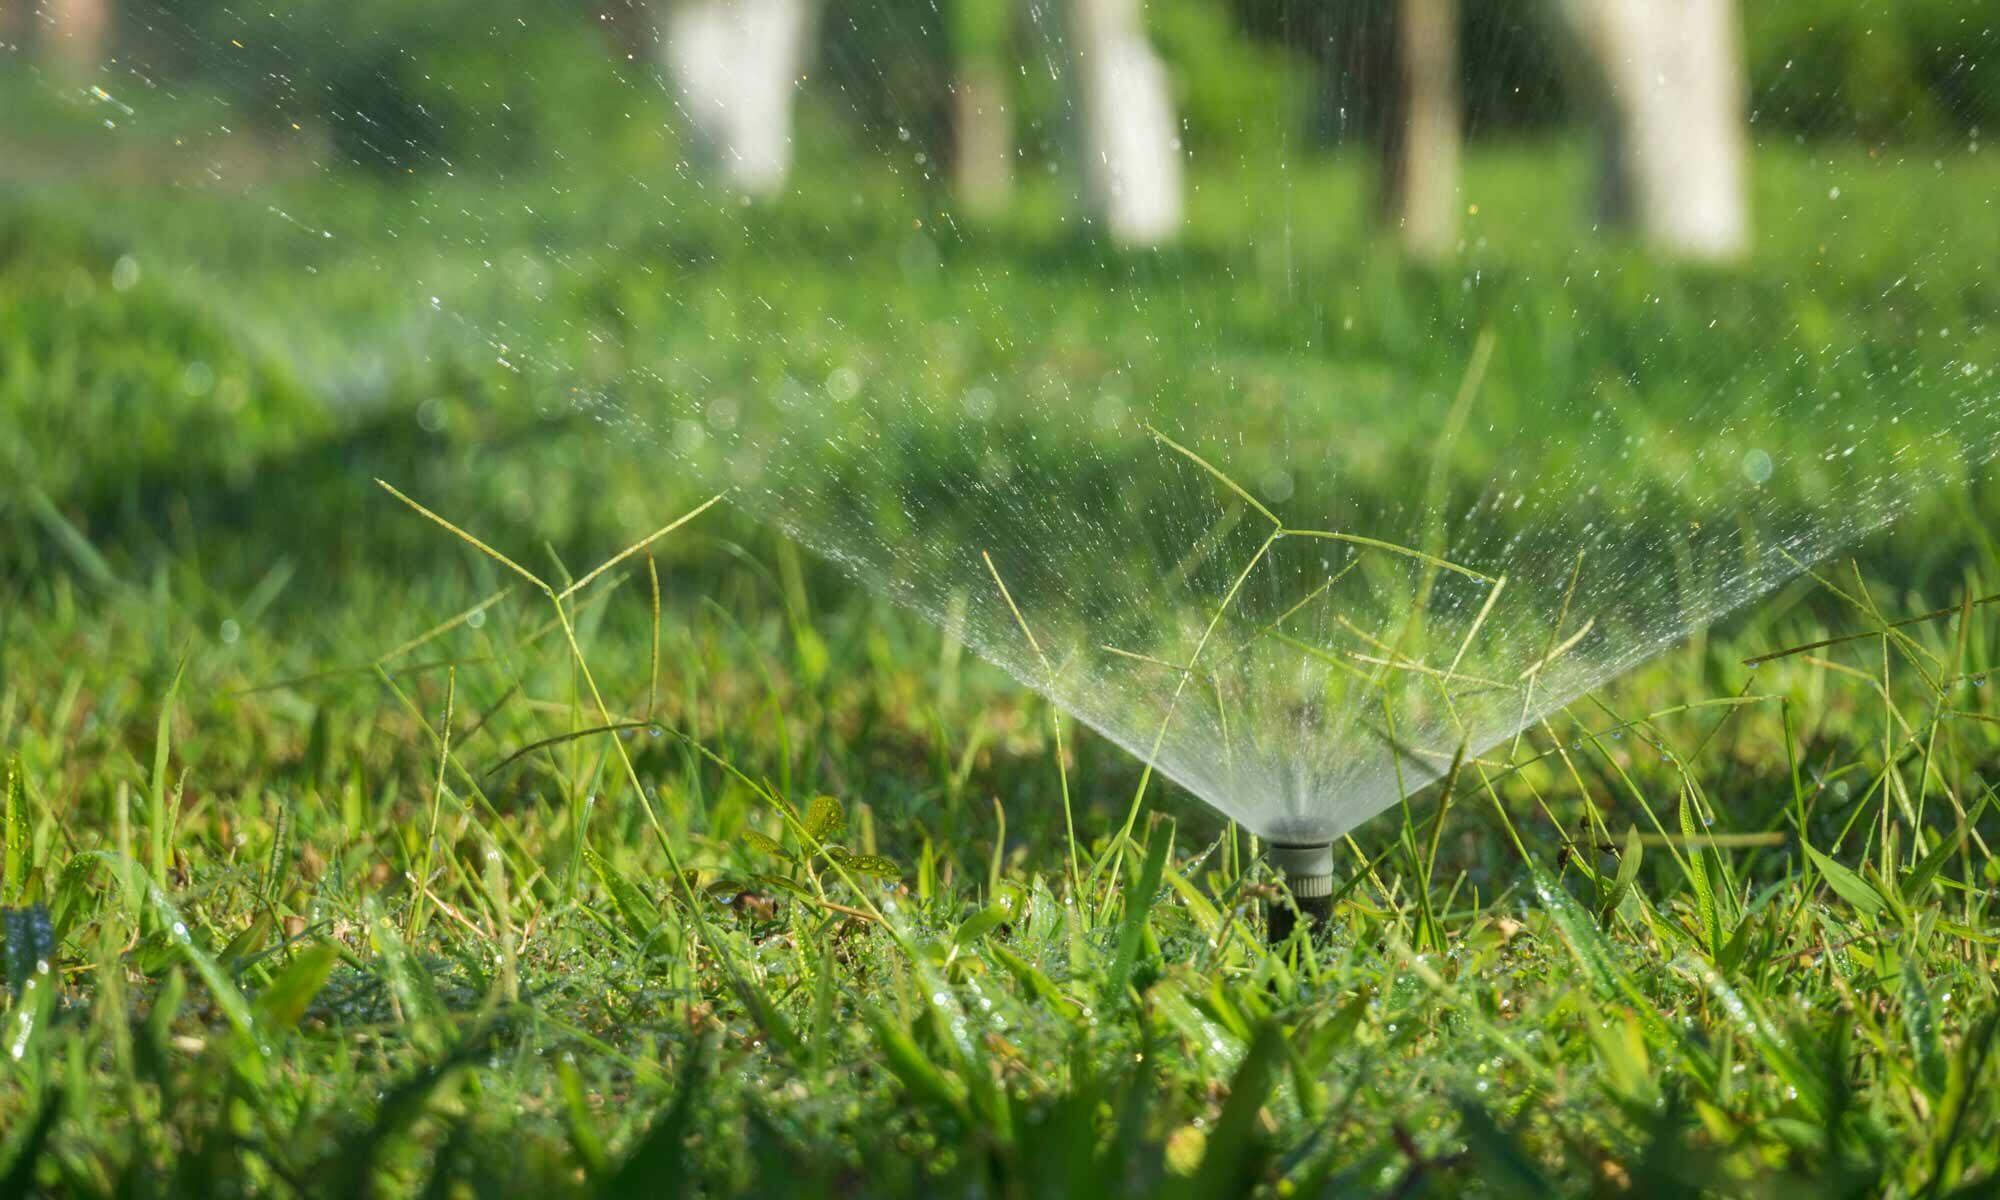 Lawn Sprinklers watering grass